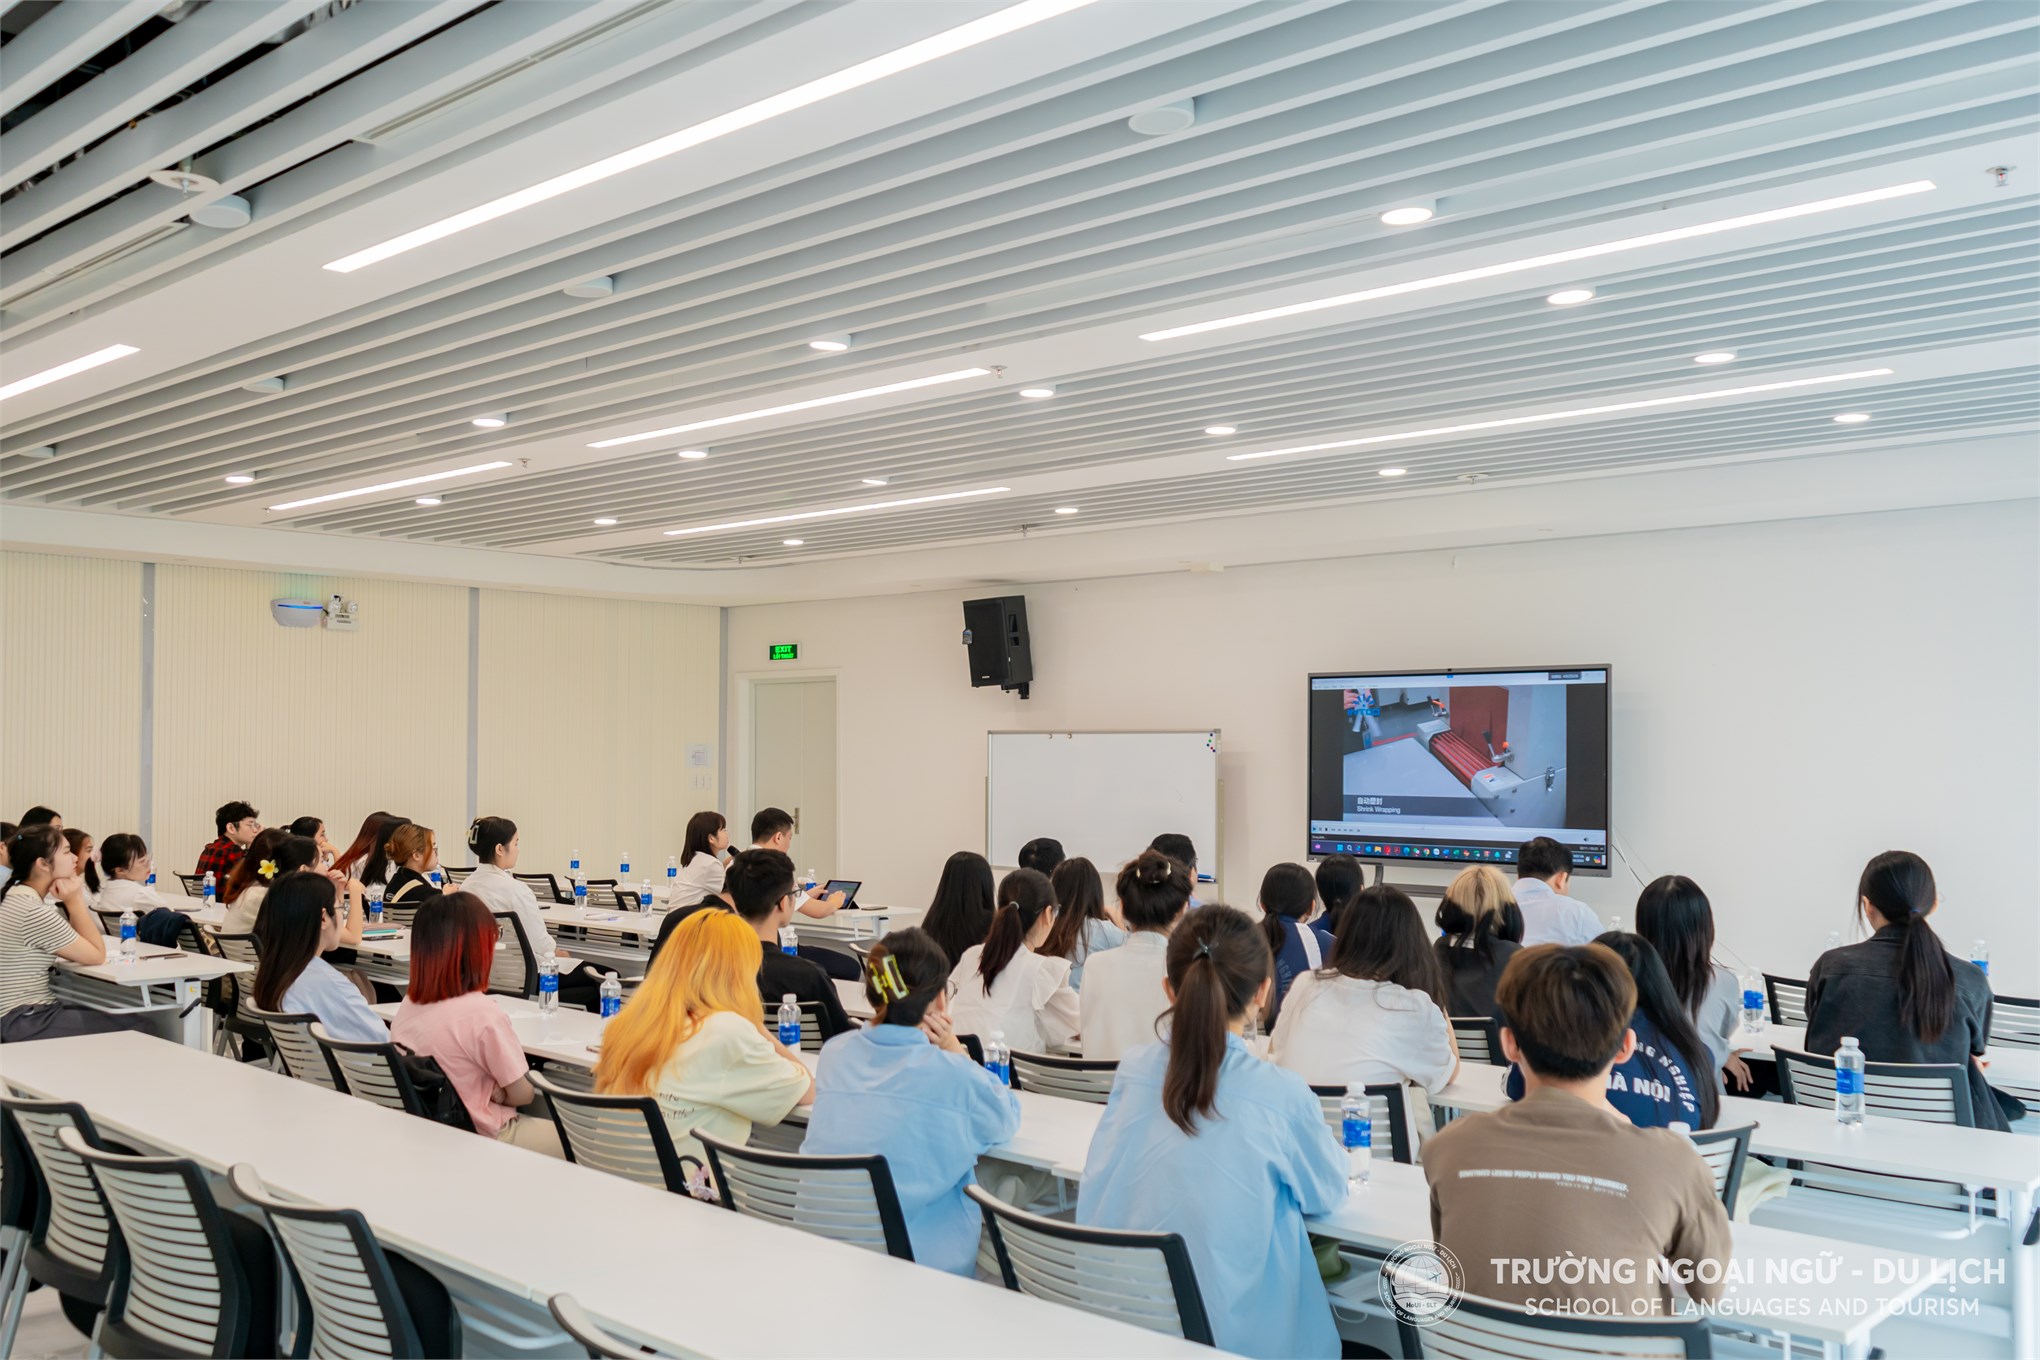 Trường Ngoại ngữ - Du lịch, Đại học Công nghiệp Hà Nội tổ chức tham quan thực tế tại Công ty TNHH Công nghiệp Intco Việt Nam.